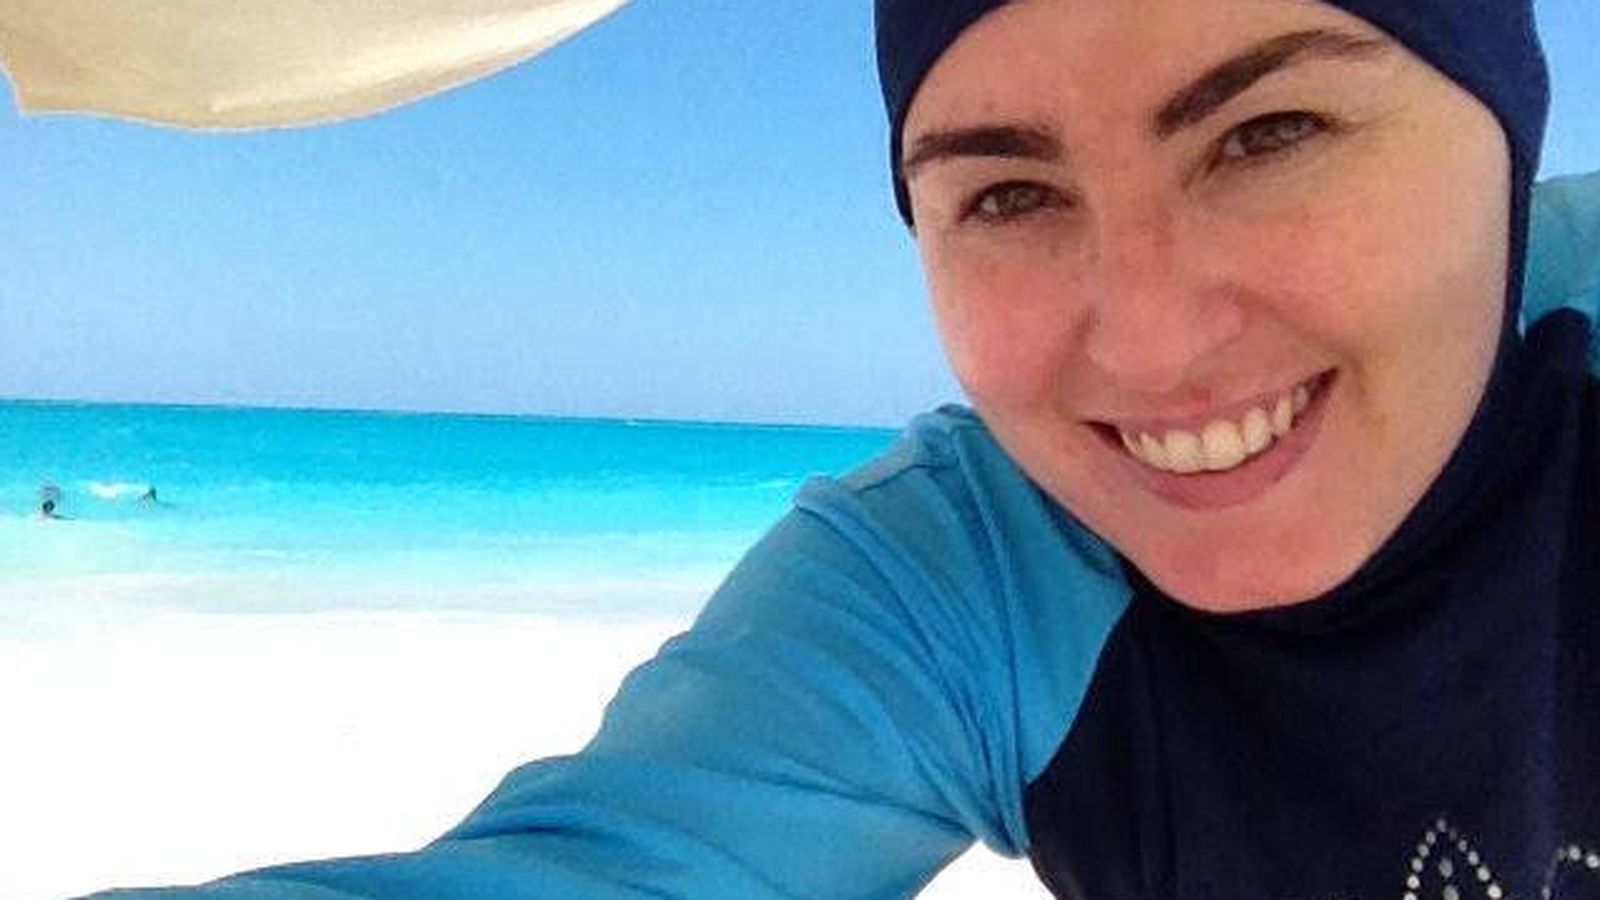 Foto: Amanda Figueras, con su 'burkini' en una playa de Egipto.